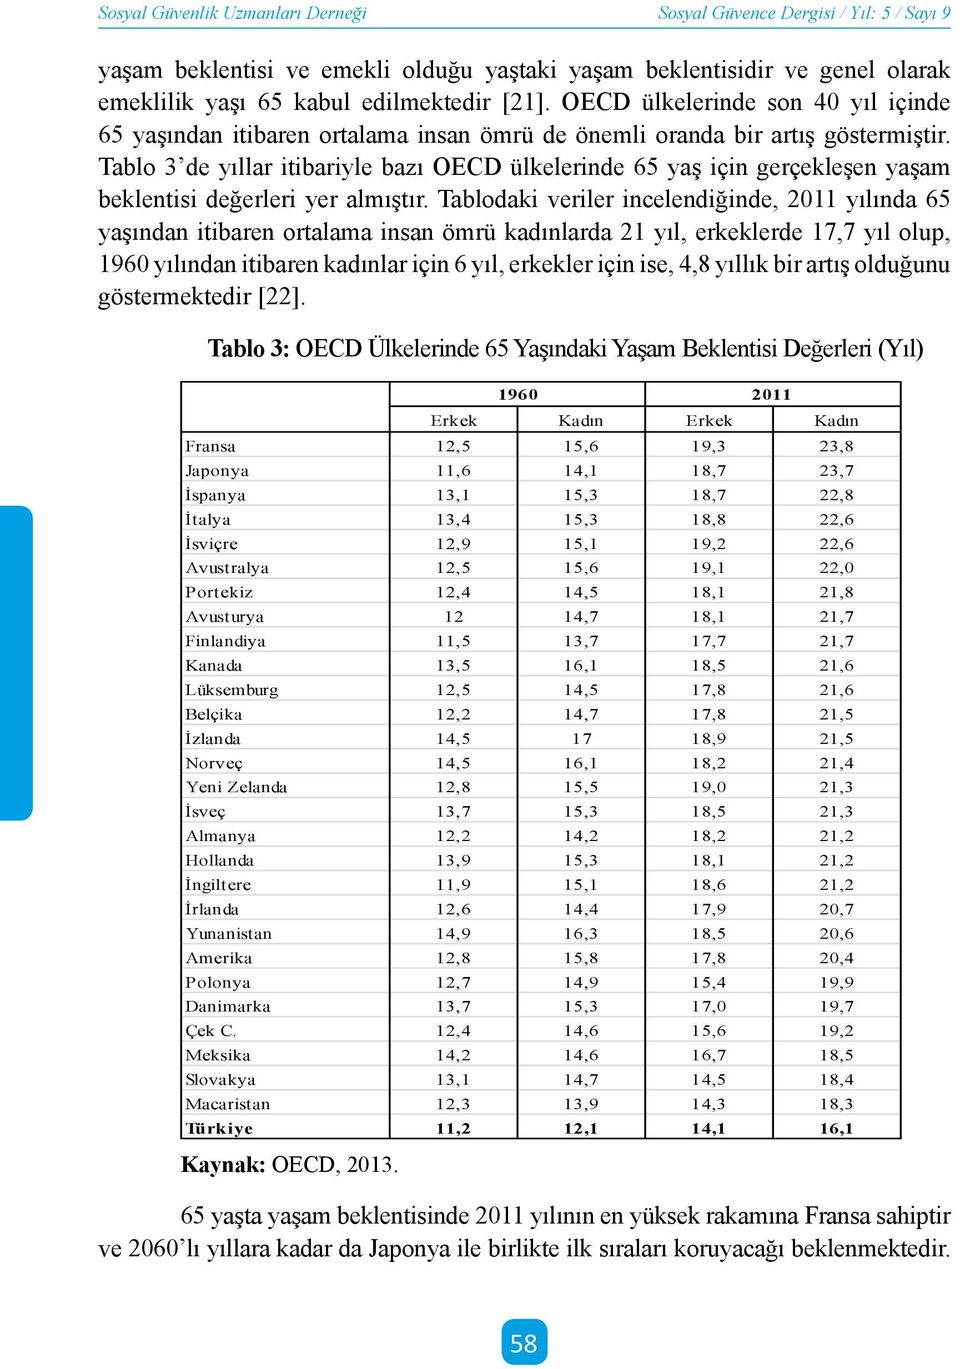 Tablo 3 de yıllar itibariyle bazı OECD ülkelerinde 65 yaş için gerçekleşen yaşam beklentisi değerleri yer almıştır.